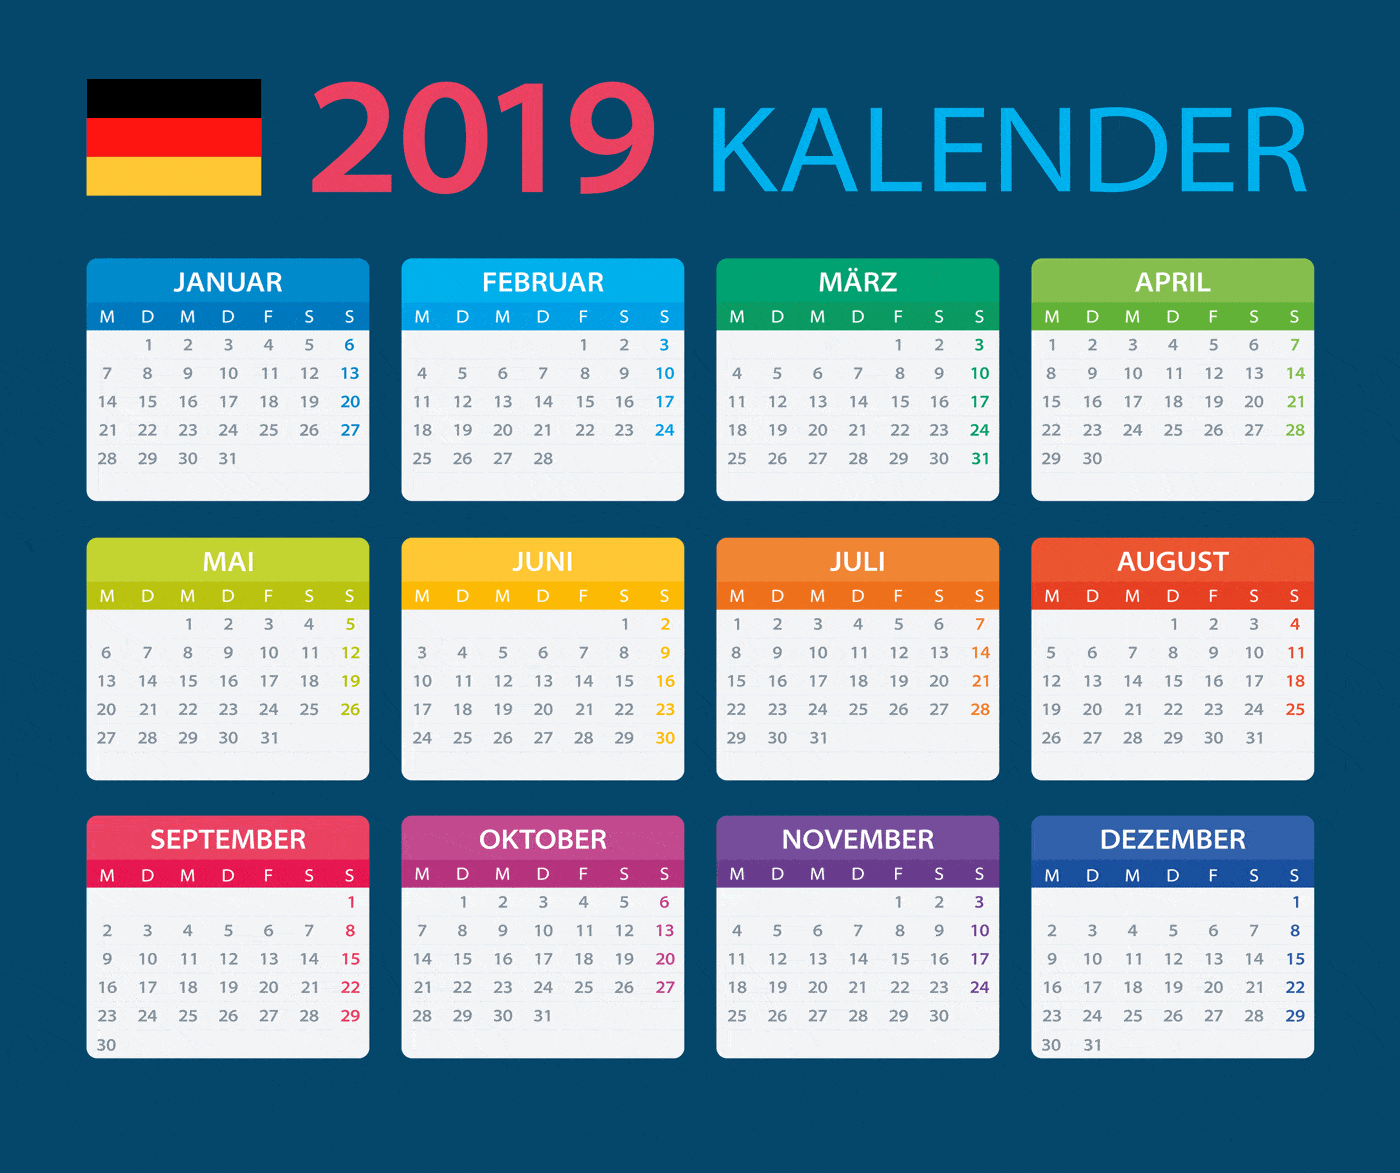 Euer Kalender für 2019